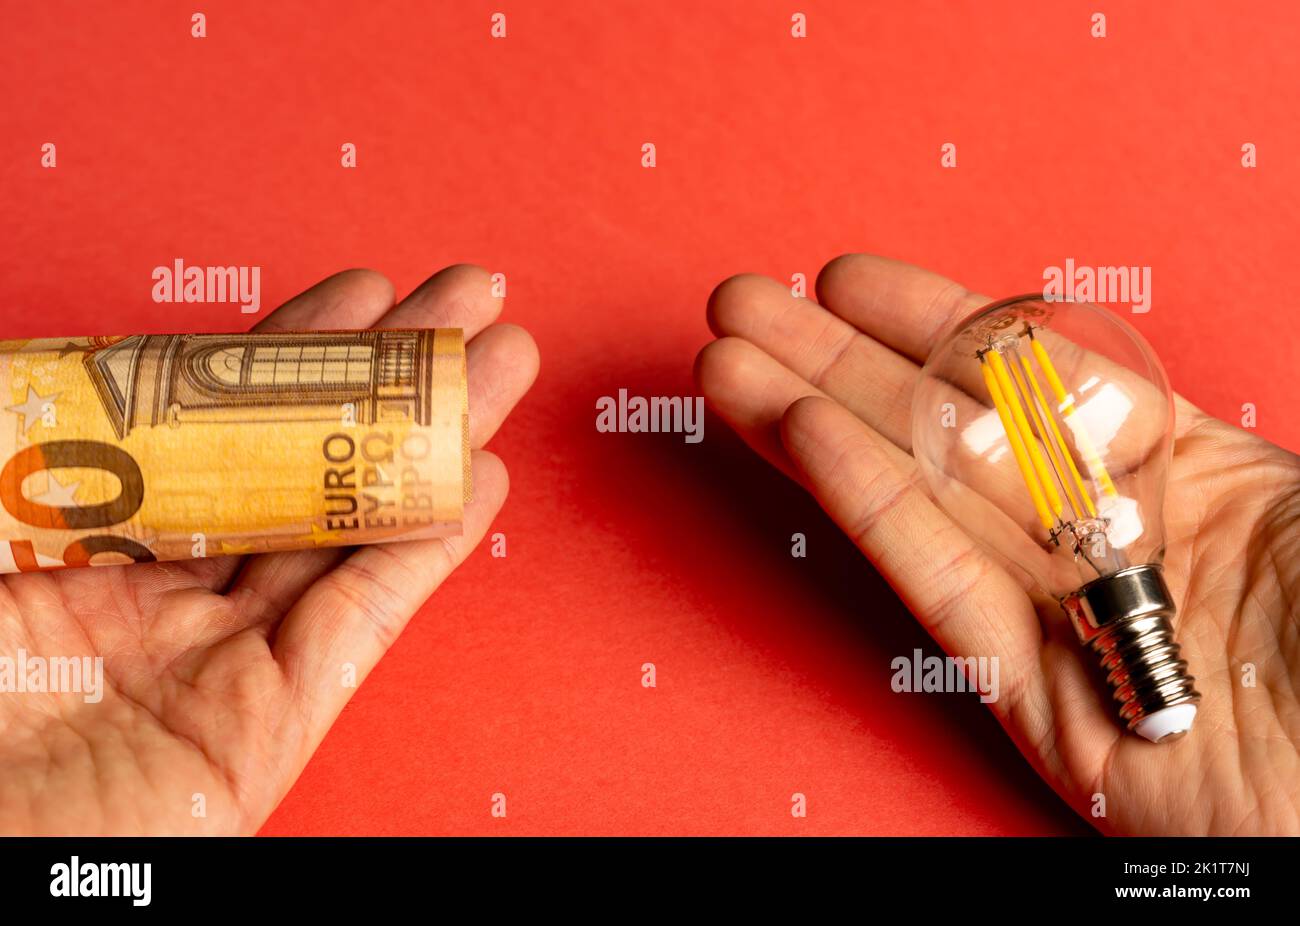 Mann, der in jeder Hand eine Glühbirne und eine Euro-Banknote hält. Konzept der Entscheidung zwischen Geld oder Energie. Stockfoto